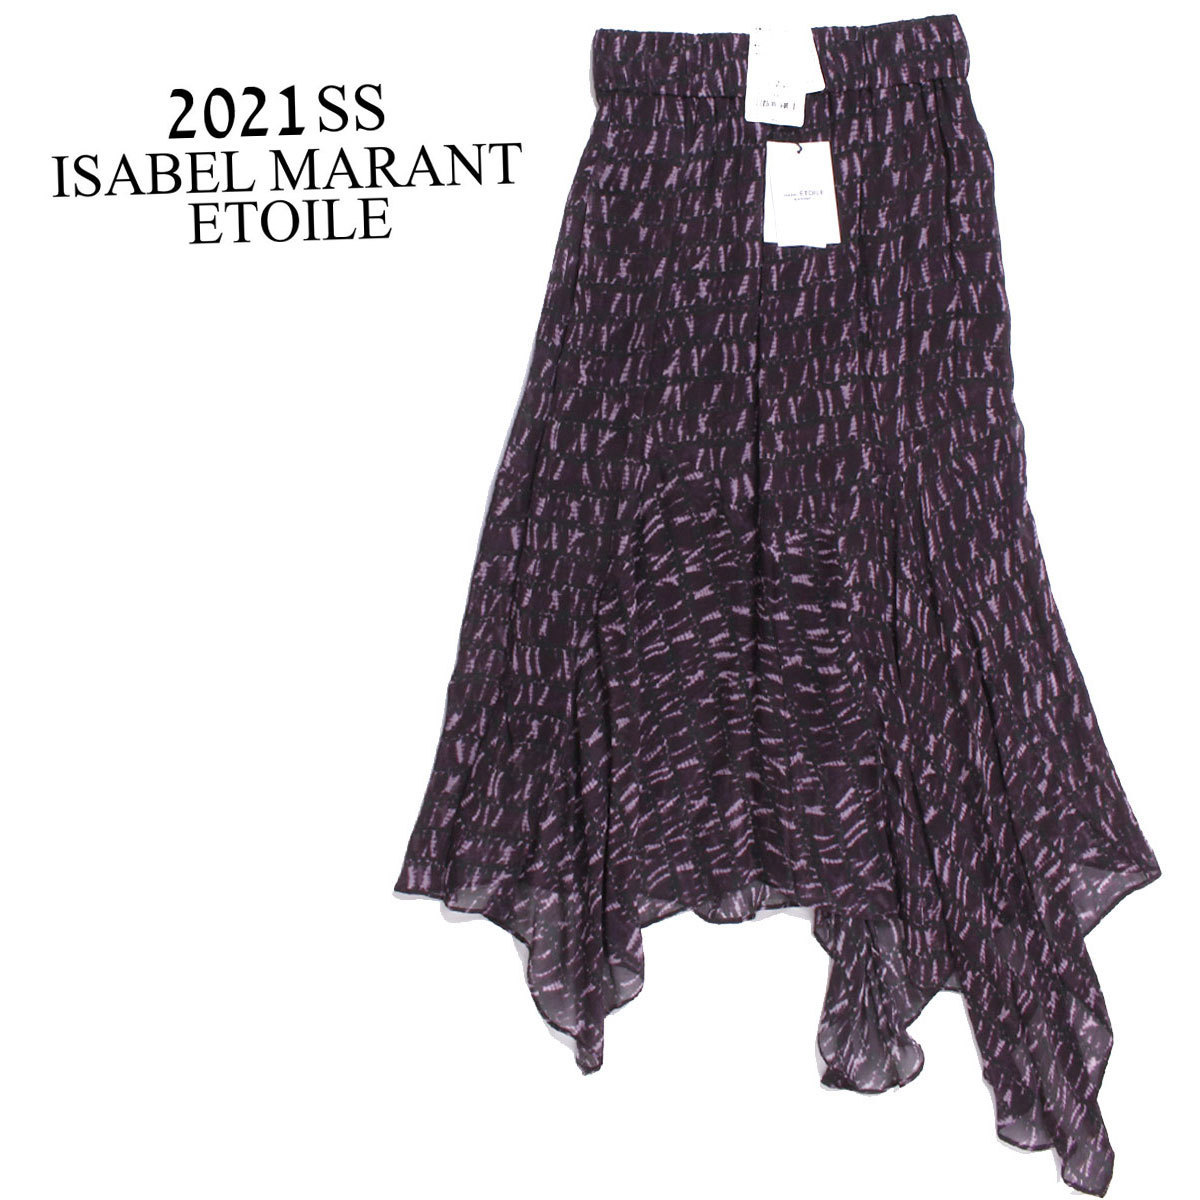 【激安アウトレット!】 B158/21SS ティアードスカート ETOILE MARANT ISABEL ロングスカート